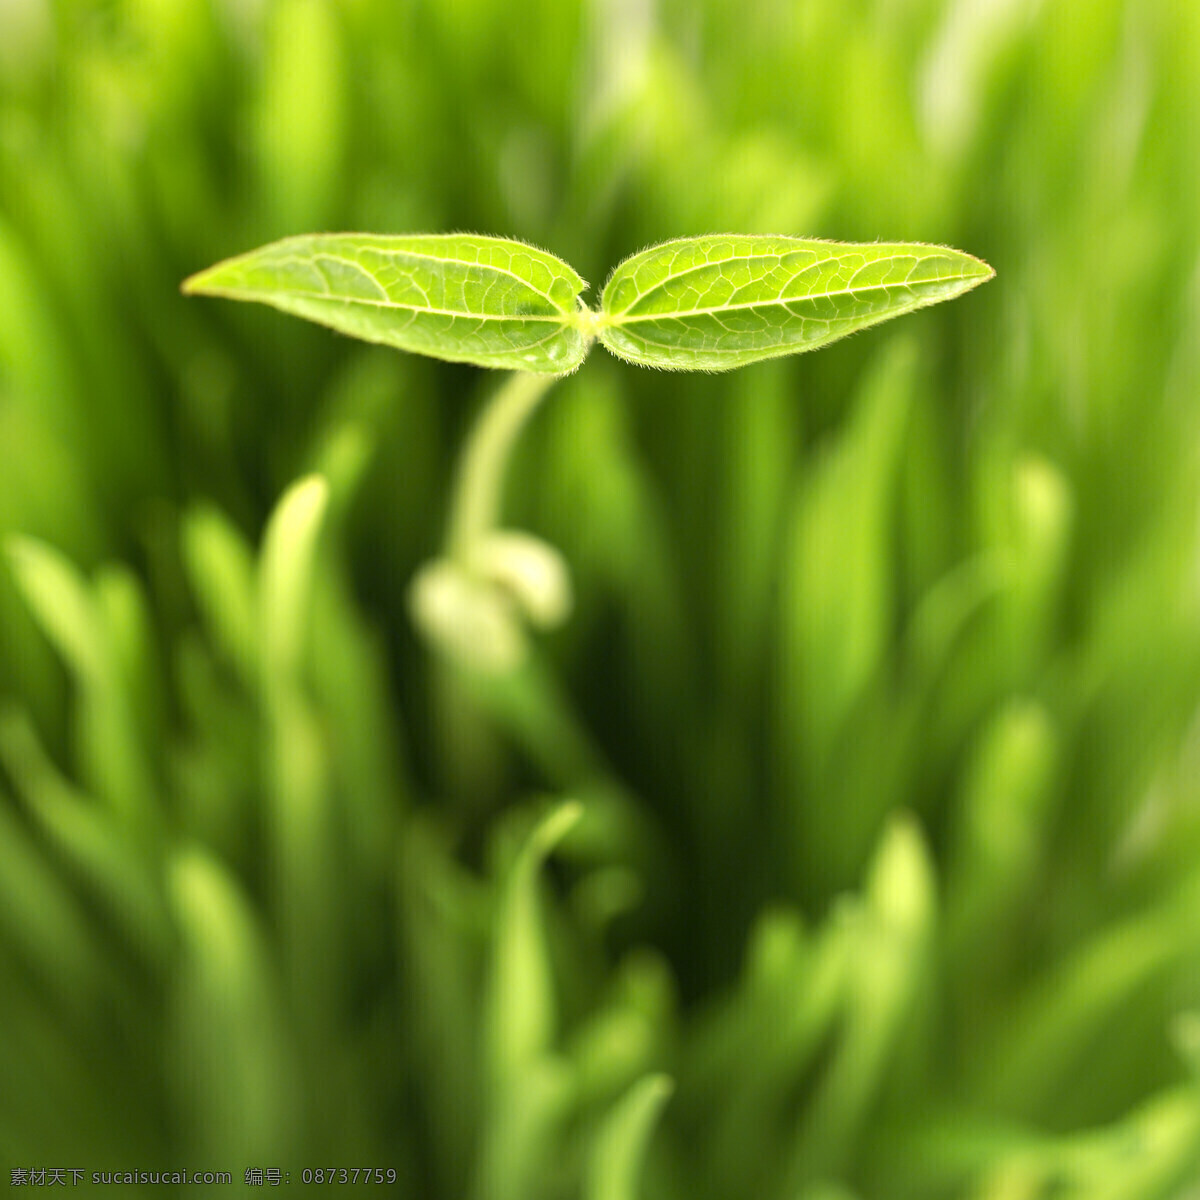 绿色 幼苗 叶子 特写 植物 健康 成长 希望 清新 出土 新生 象征 种子 茁状成长 向上 发芽 呵护 培养 生命力 培育 滋润 自然 高清图片 花草树木 生物世界